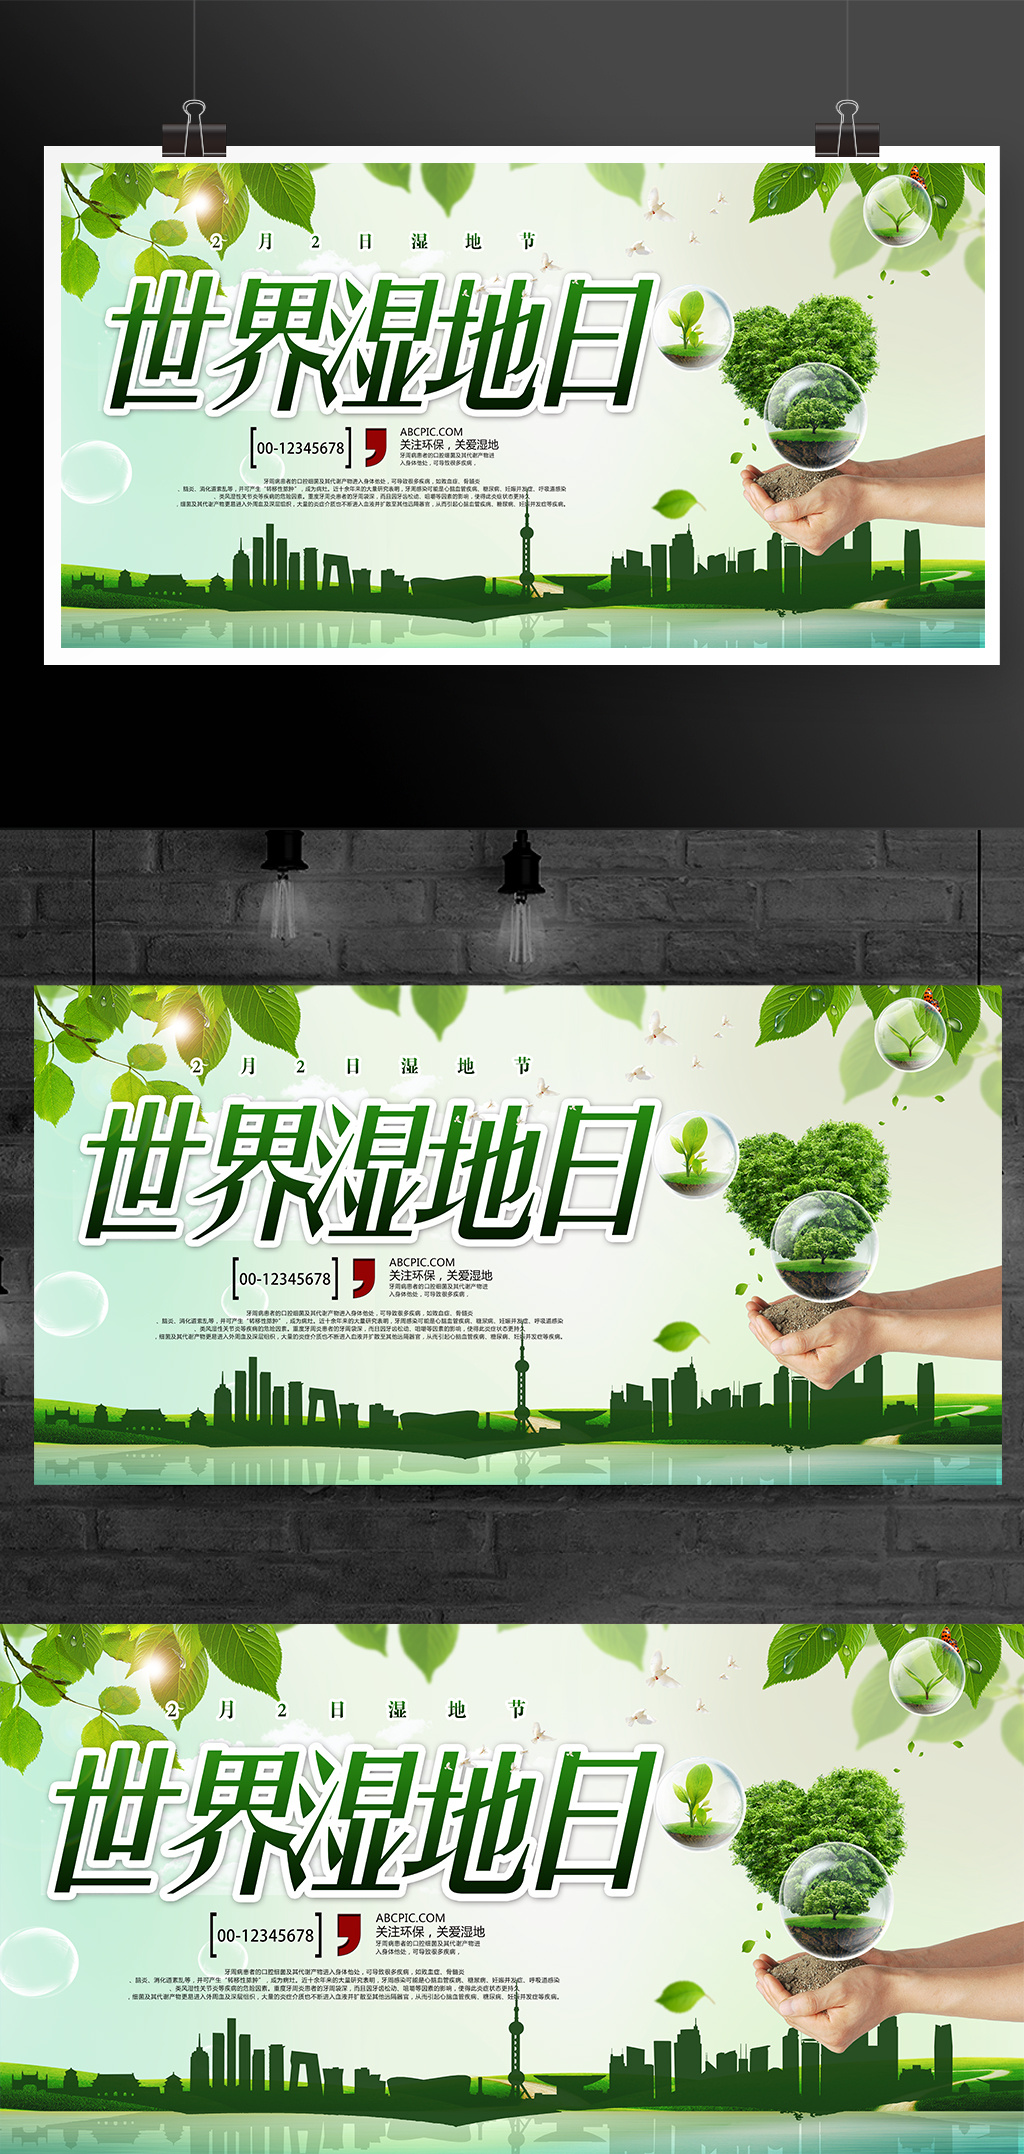 世界湿地日环保宣传海报设计